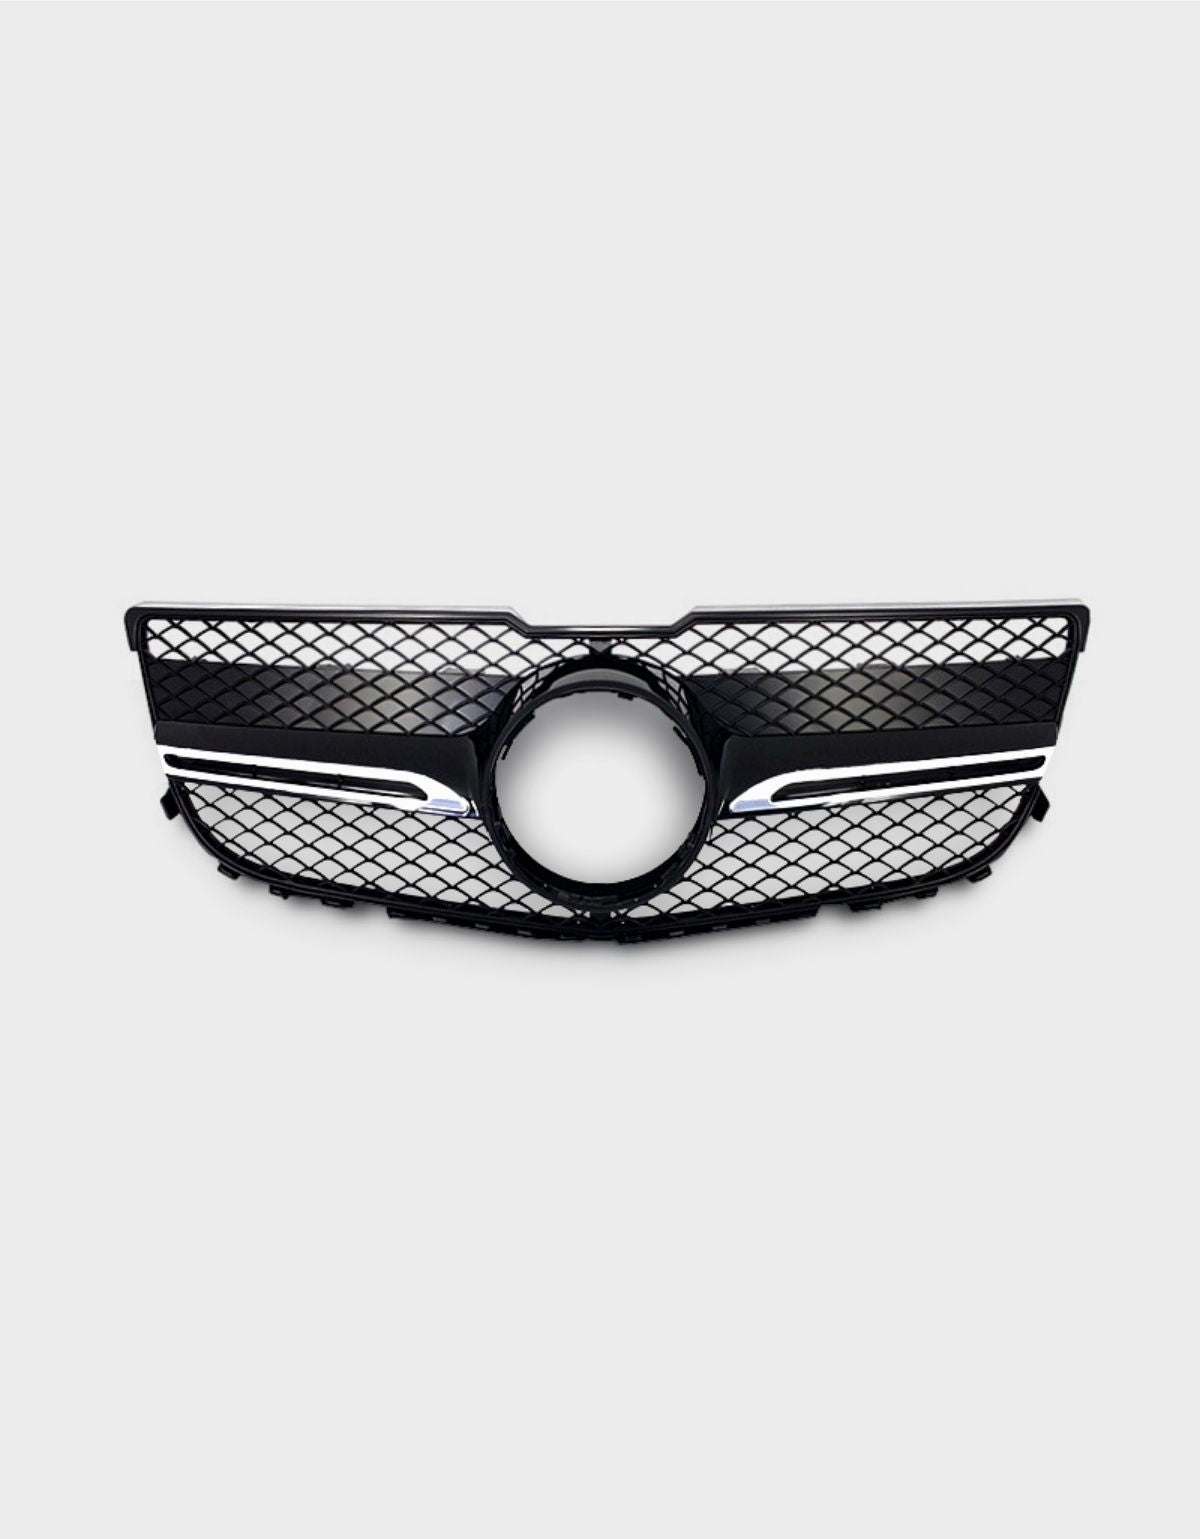 Autorivallo | Griglia Sportiva per Mercedes Benz GLK (X204) Anno: 09/2012 - 07/2015 Ottica sportiva Nero / Cromato Qualità OEM - Plastica ABS, montaggio facile.